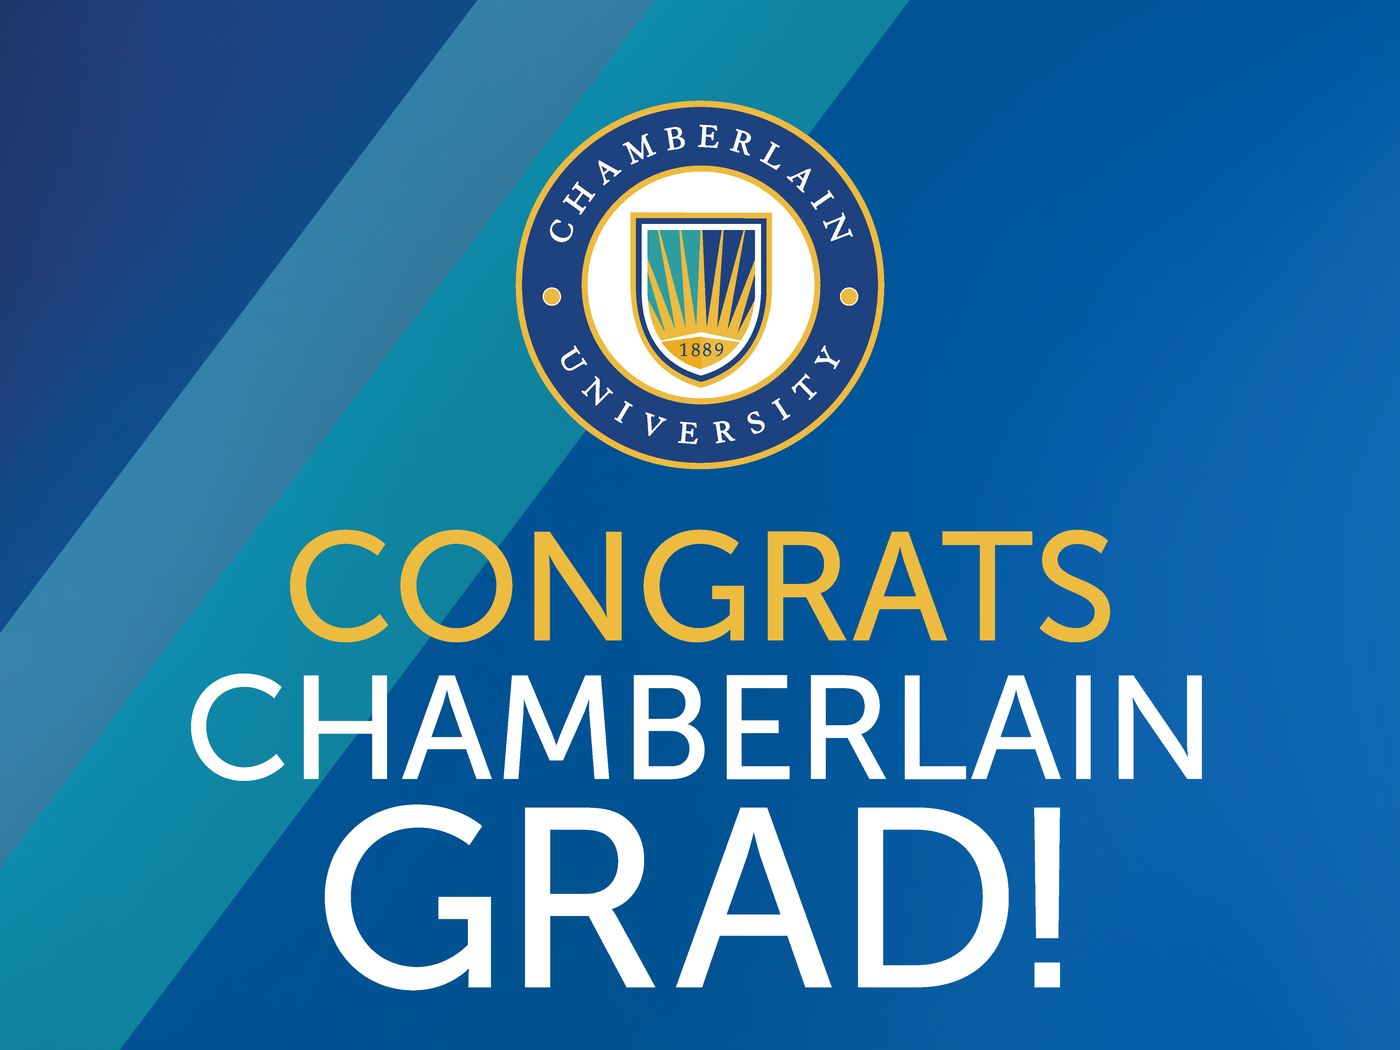 congrats grad